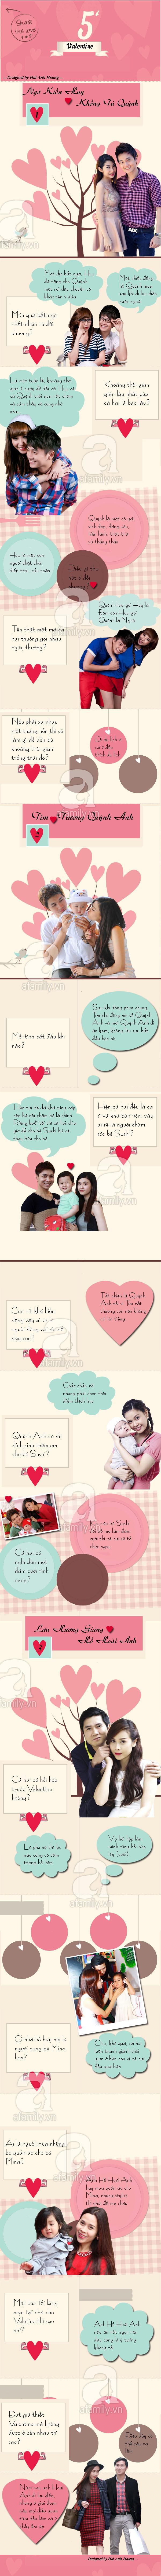 Cặp đôi nổi tiếng showbiz Việt nói gì về nhau trong ngày Valentine 1